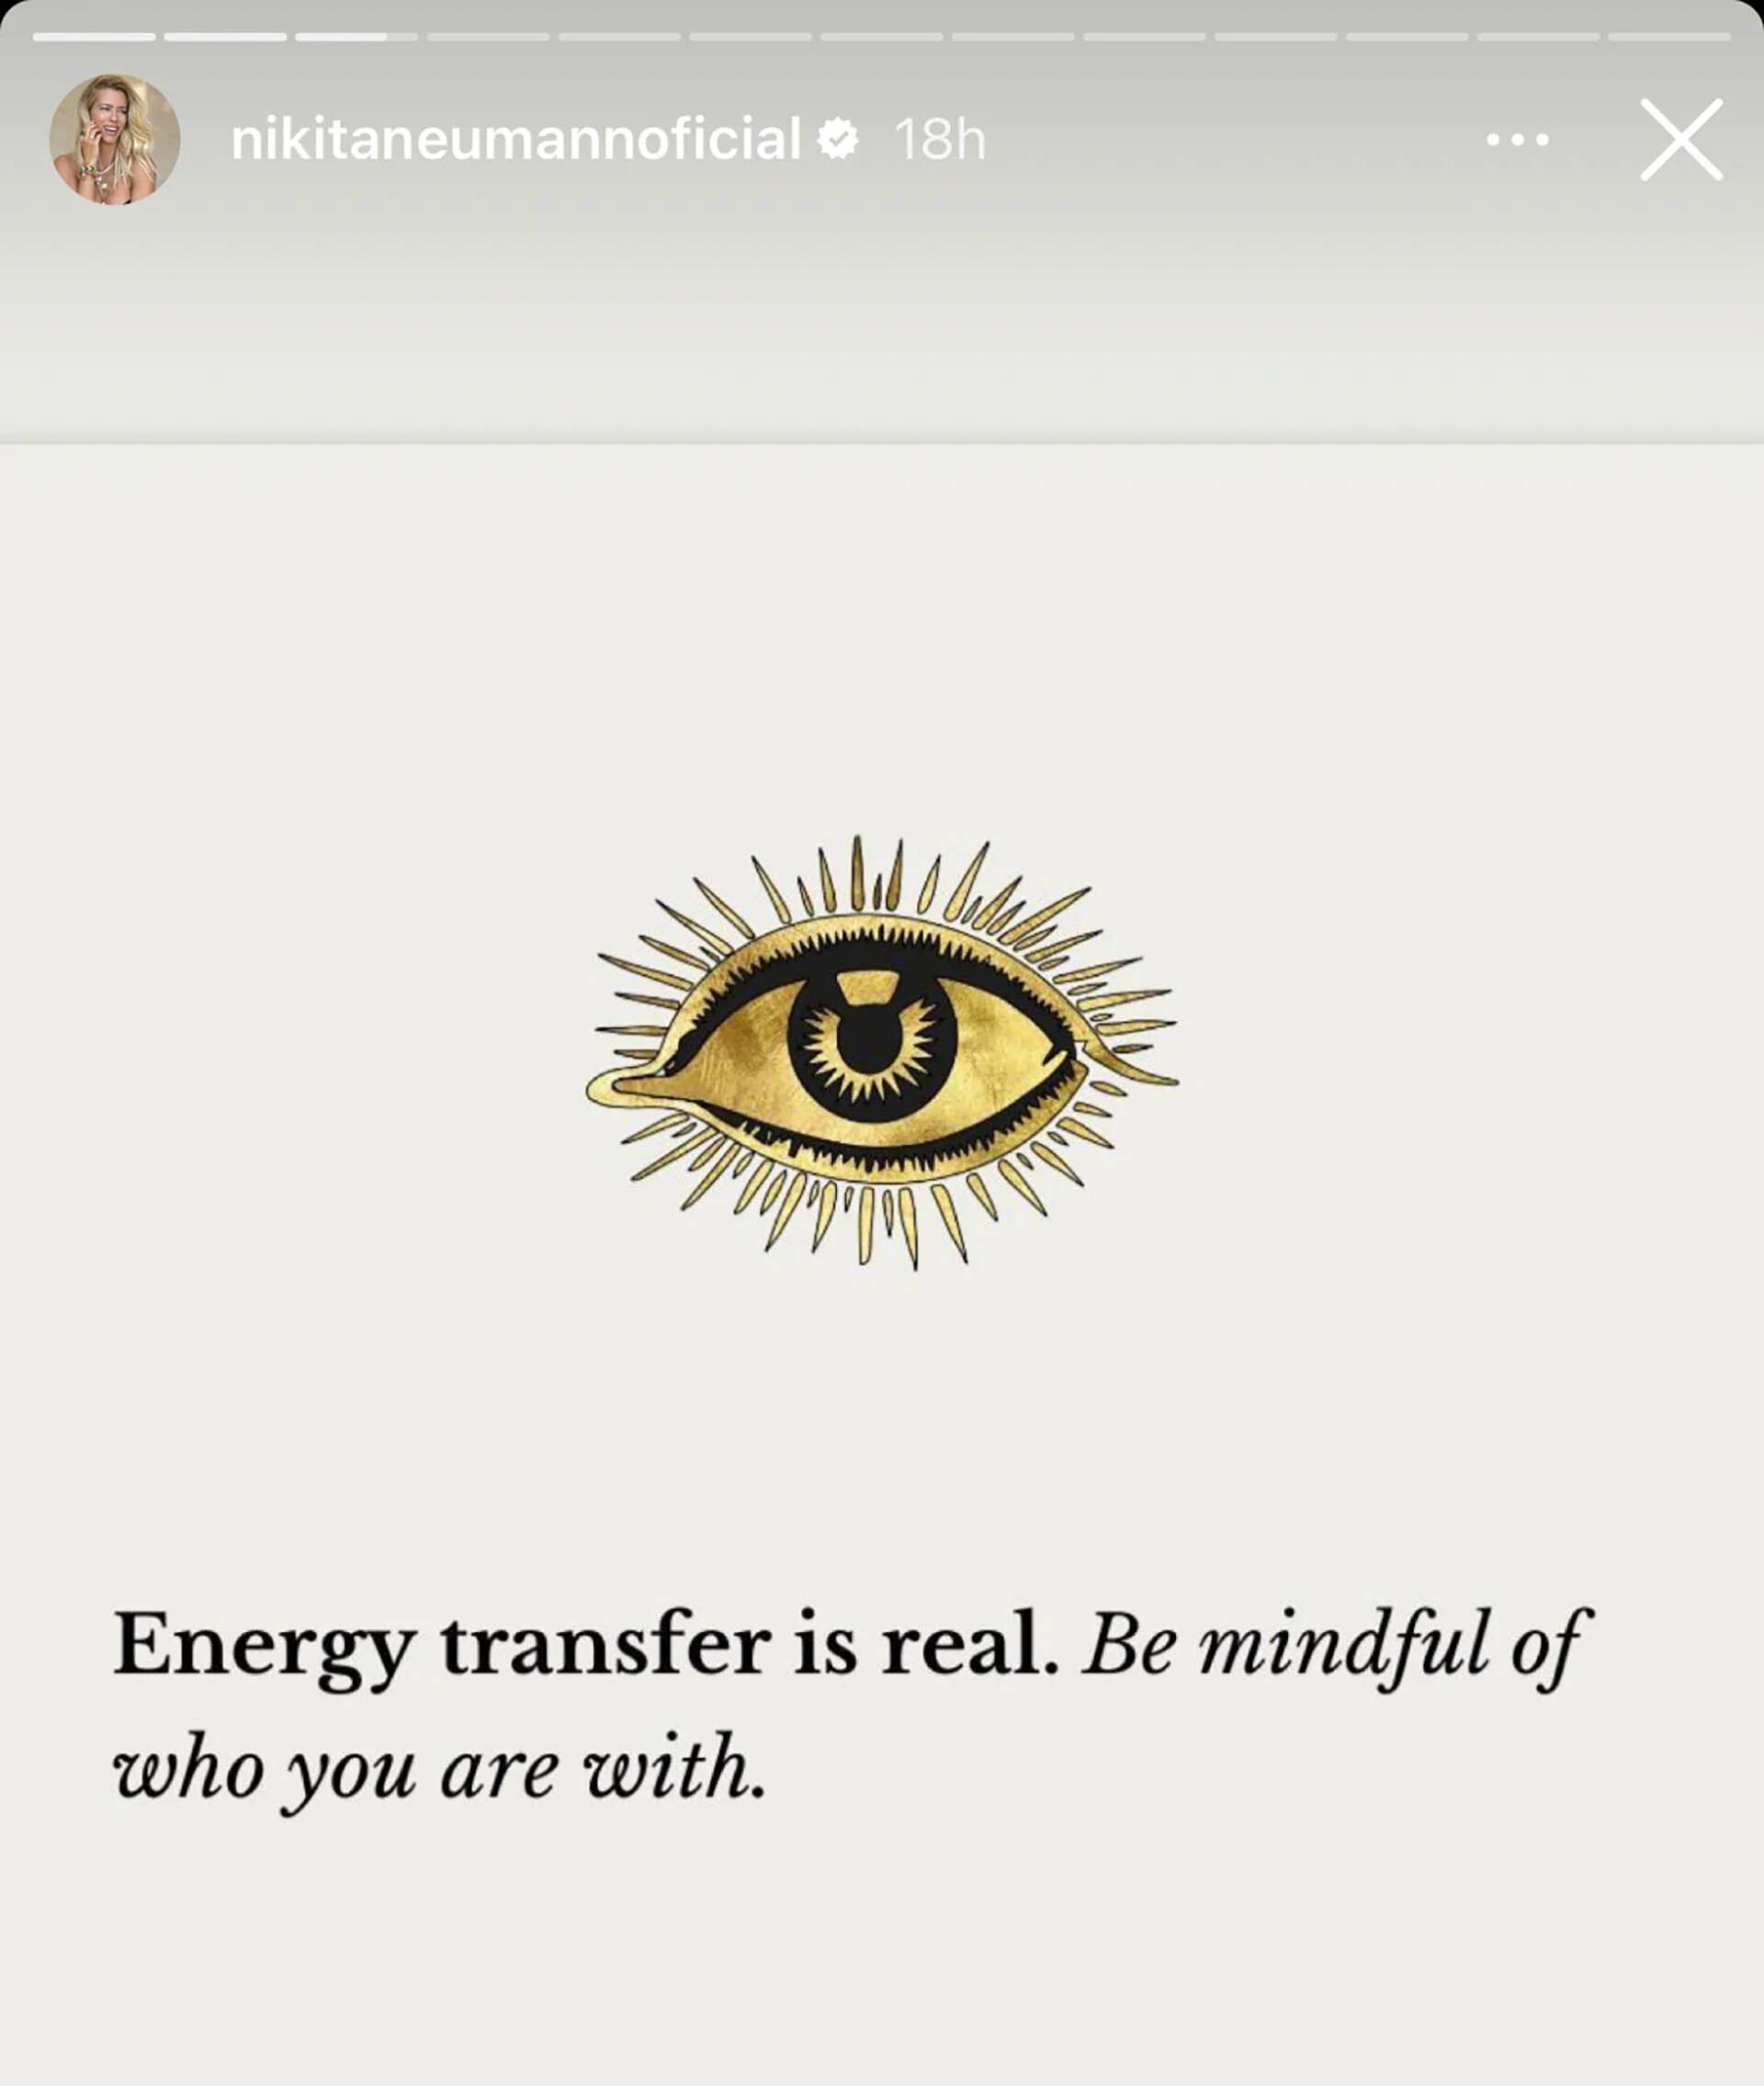 "La transferencia de energía es real. Ten en cuenta con quién estás", dice la frase que compartió Nicole